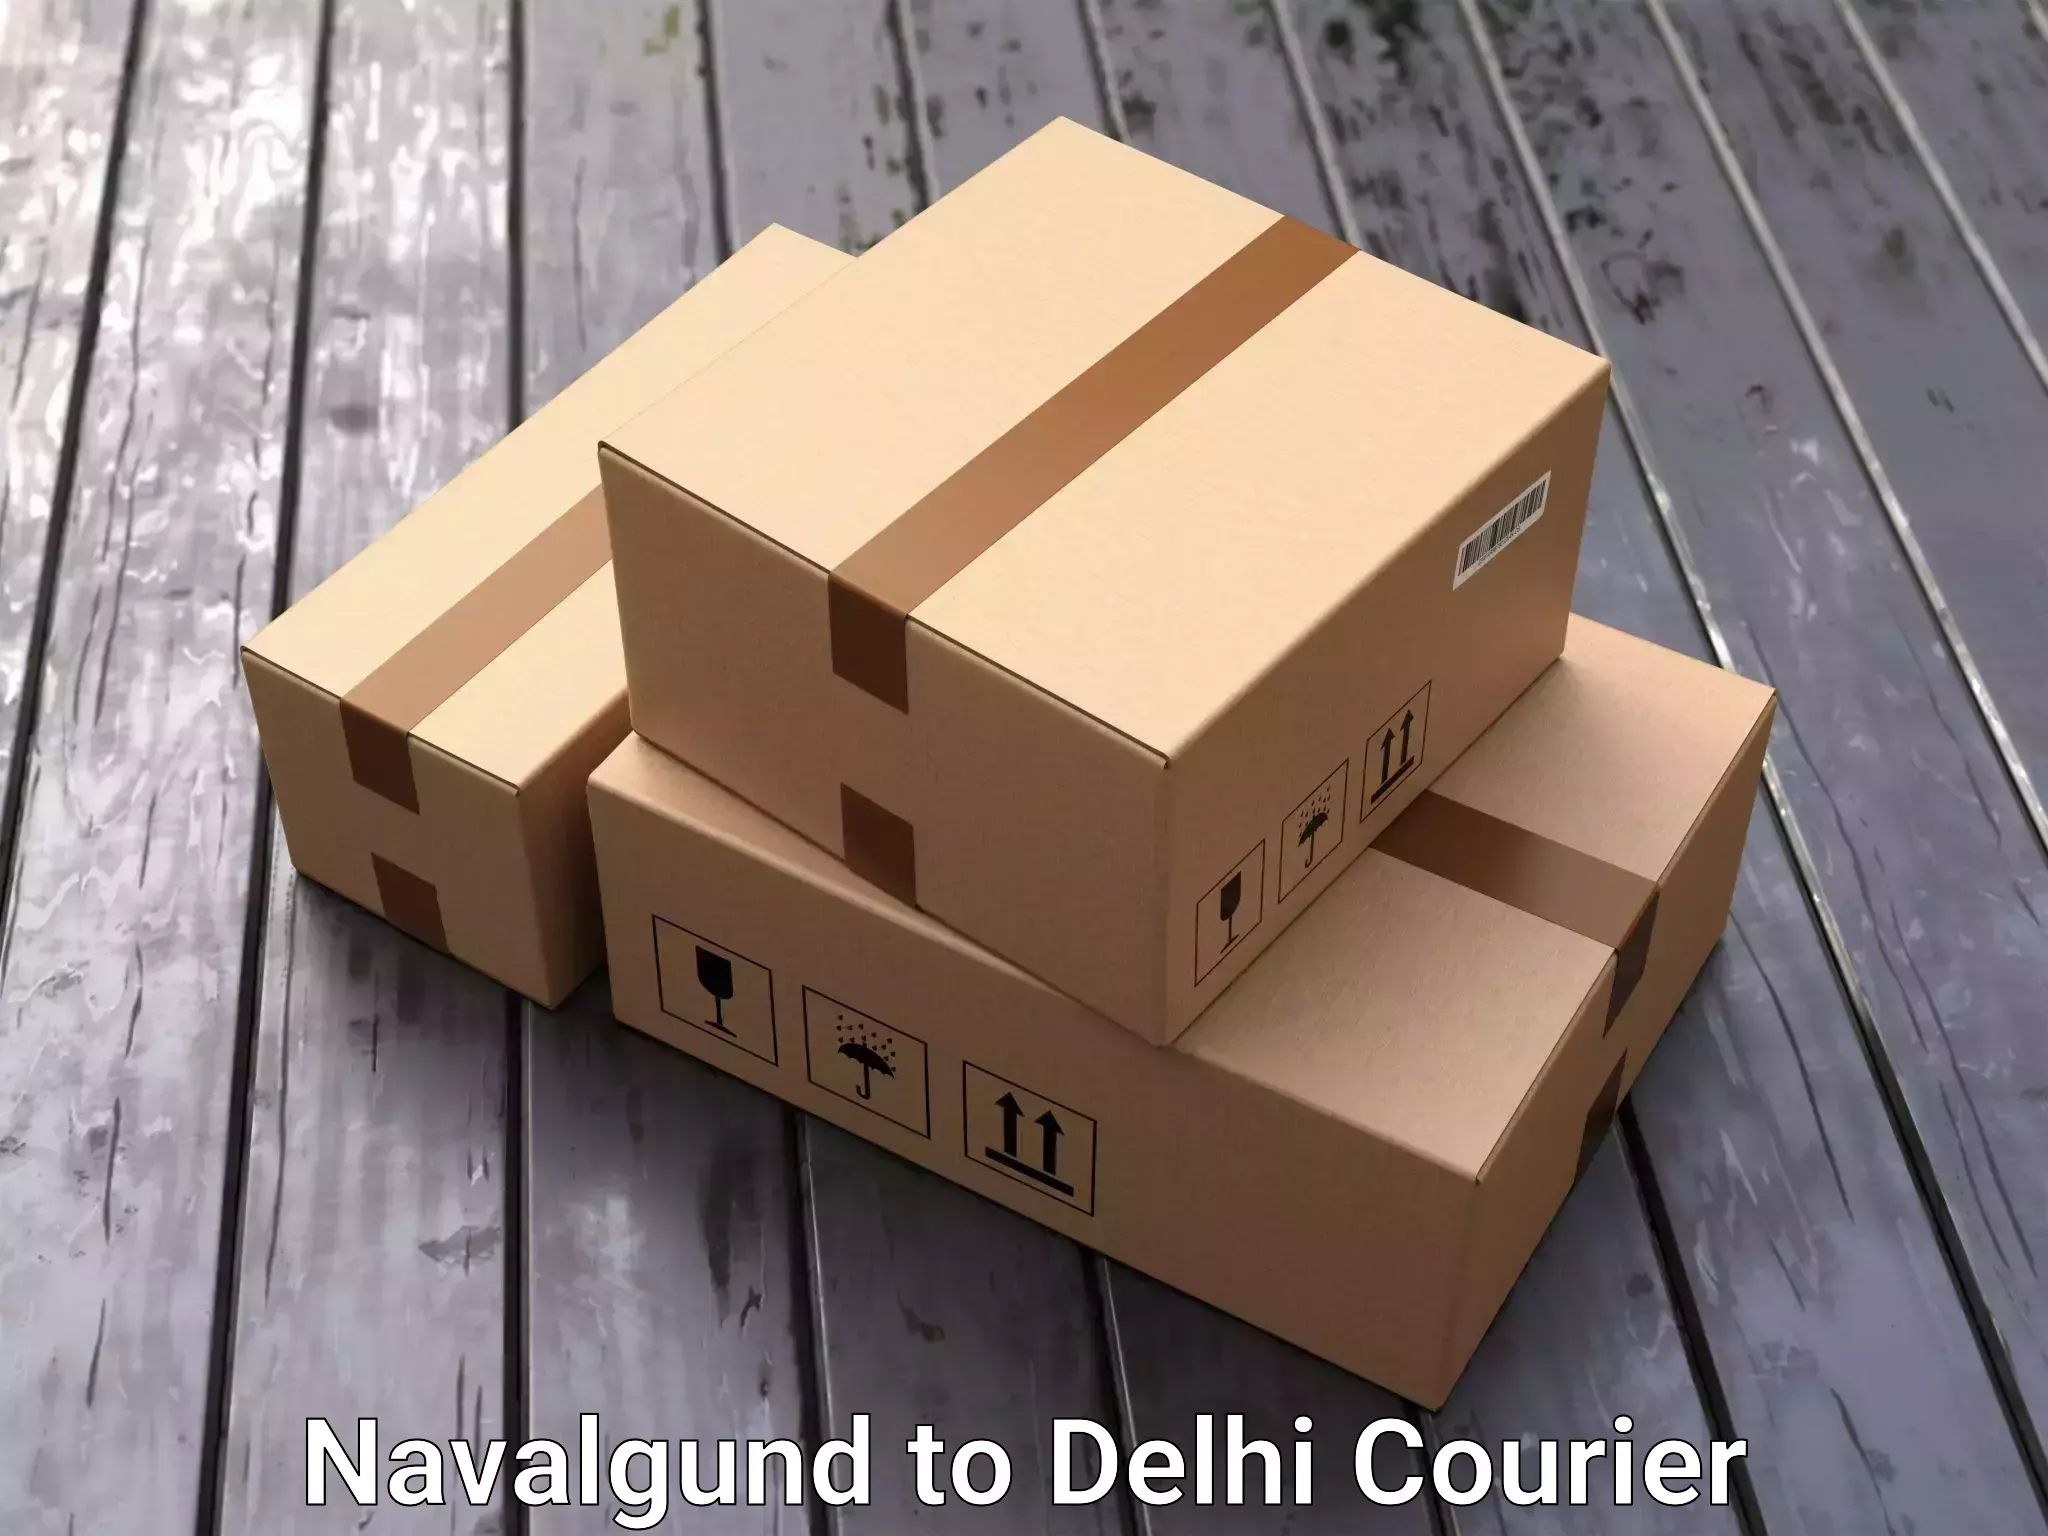 Budget-friendly moving services Navalgund to Delhi